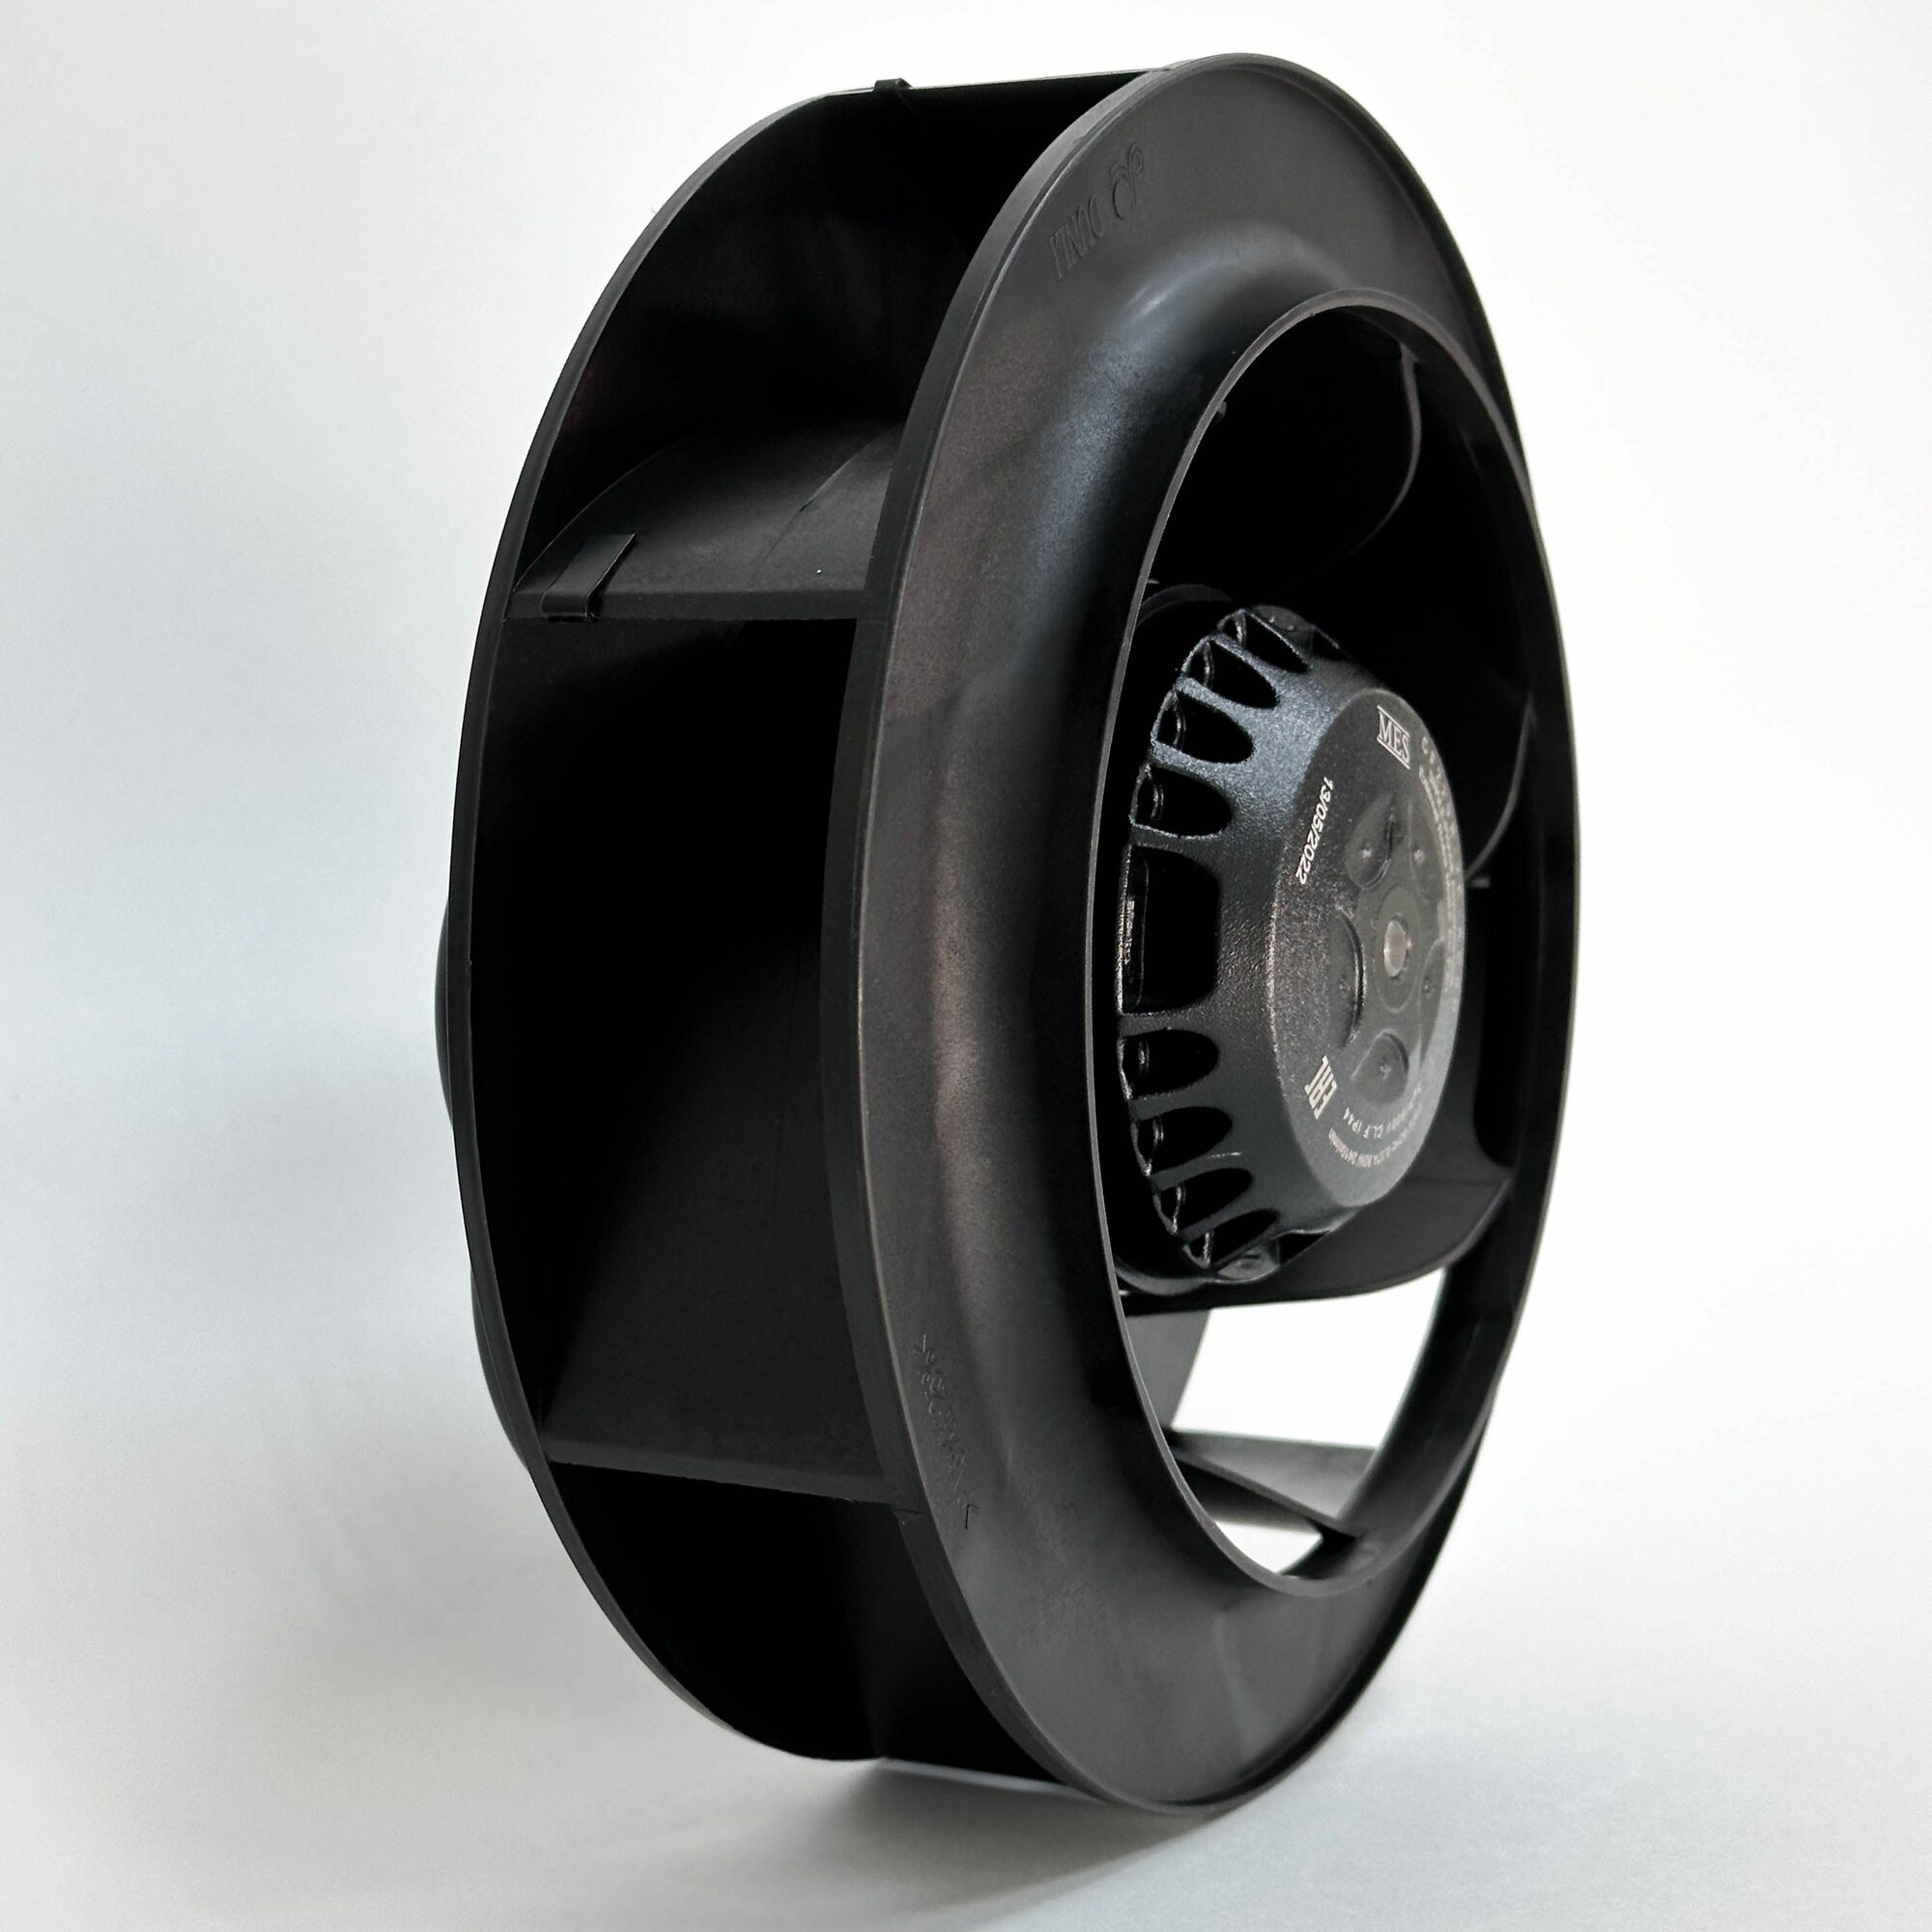 Мотор-колесо MES CF220B-2E-AC0D диаметр 220 мм центробежное, для круглых канальных вентиляторов d 160 мм, 230В, 910 м3/час, 440 Па, 80 Вт, 0.37 А, IP 44